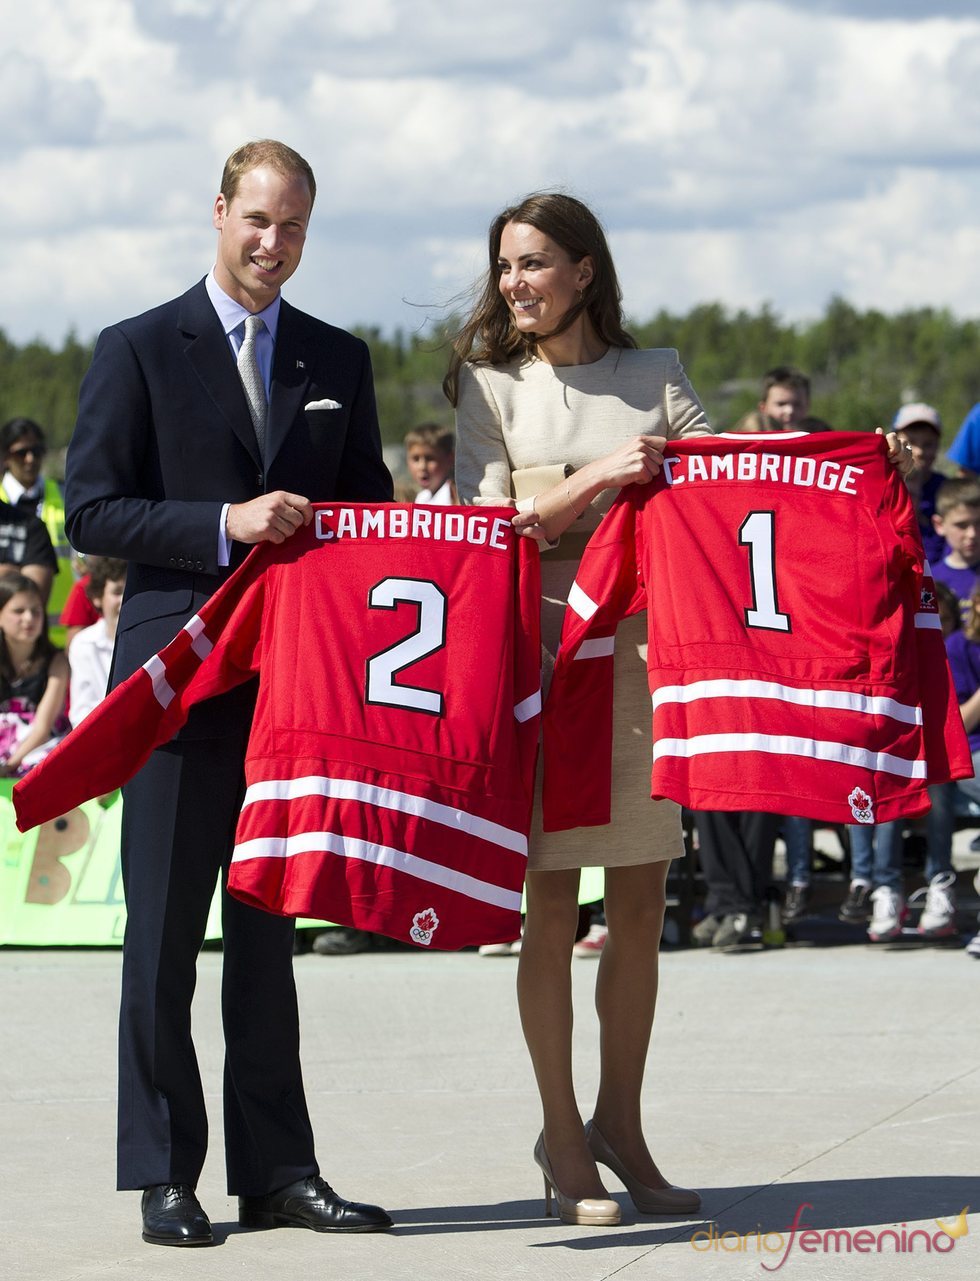 Guillermo de Inglaterra y Kate Middleton reciben una camiseta de hockey